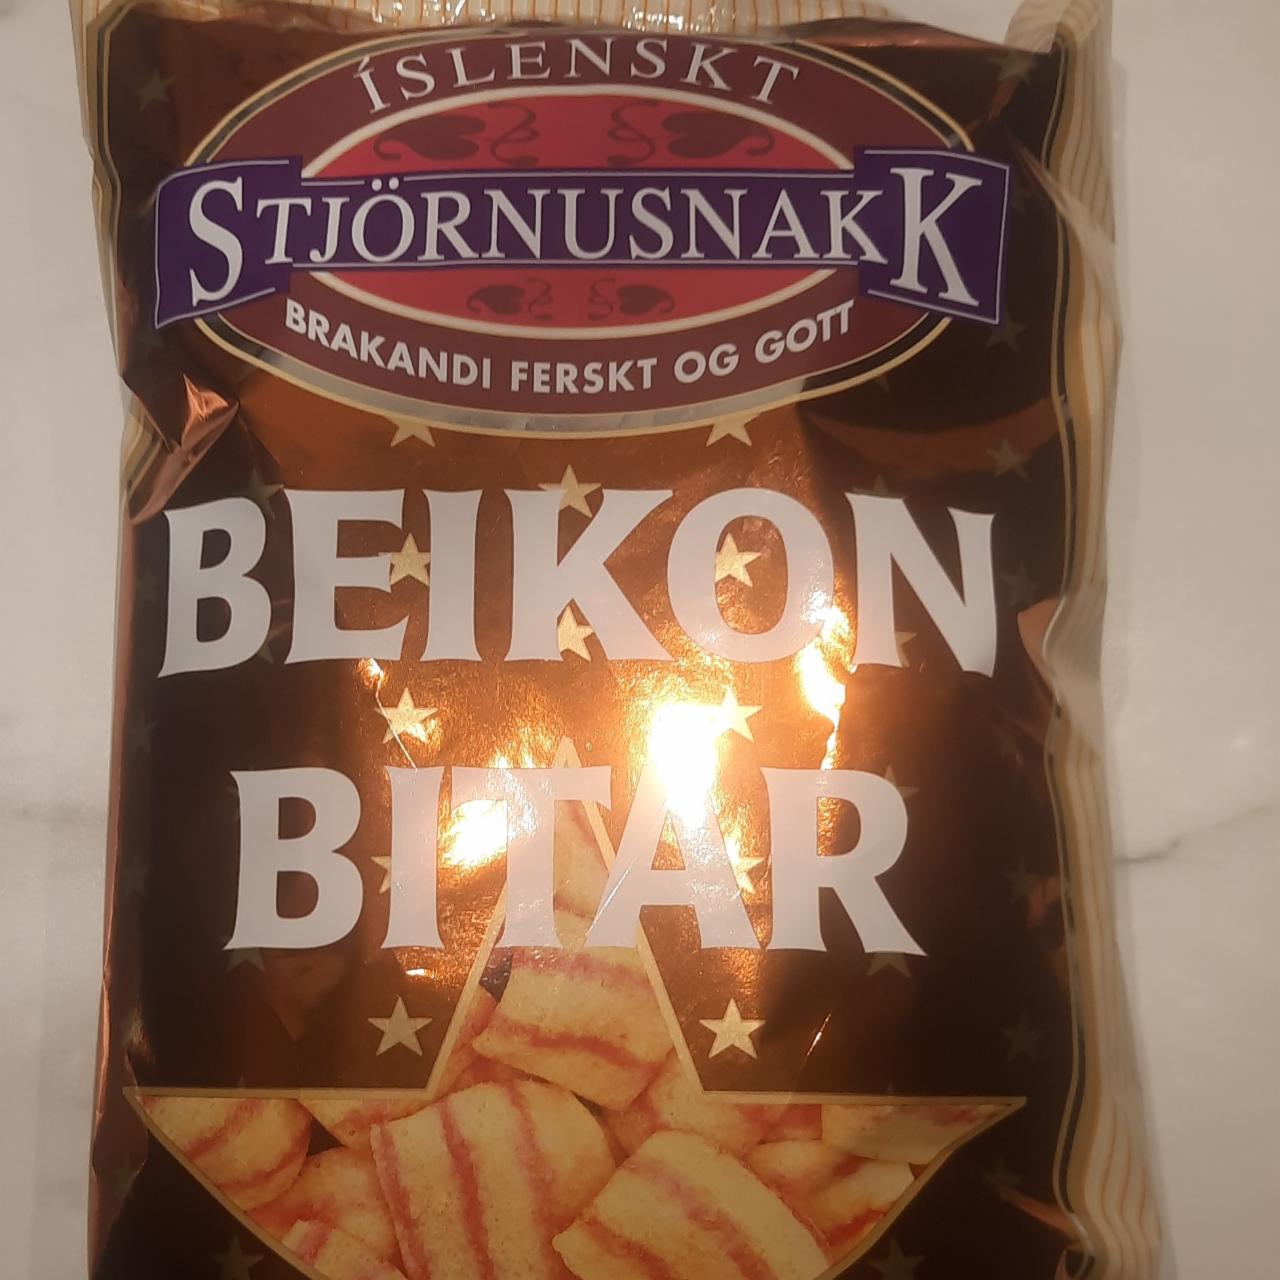 Фото - Beikon bitar StjörnusnakK